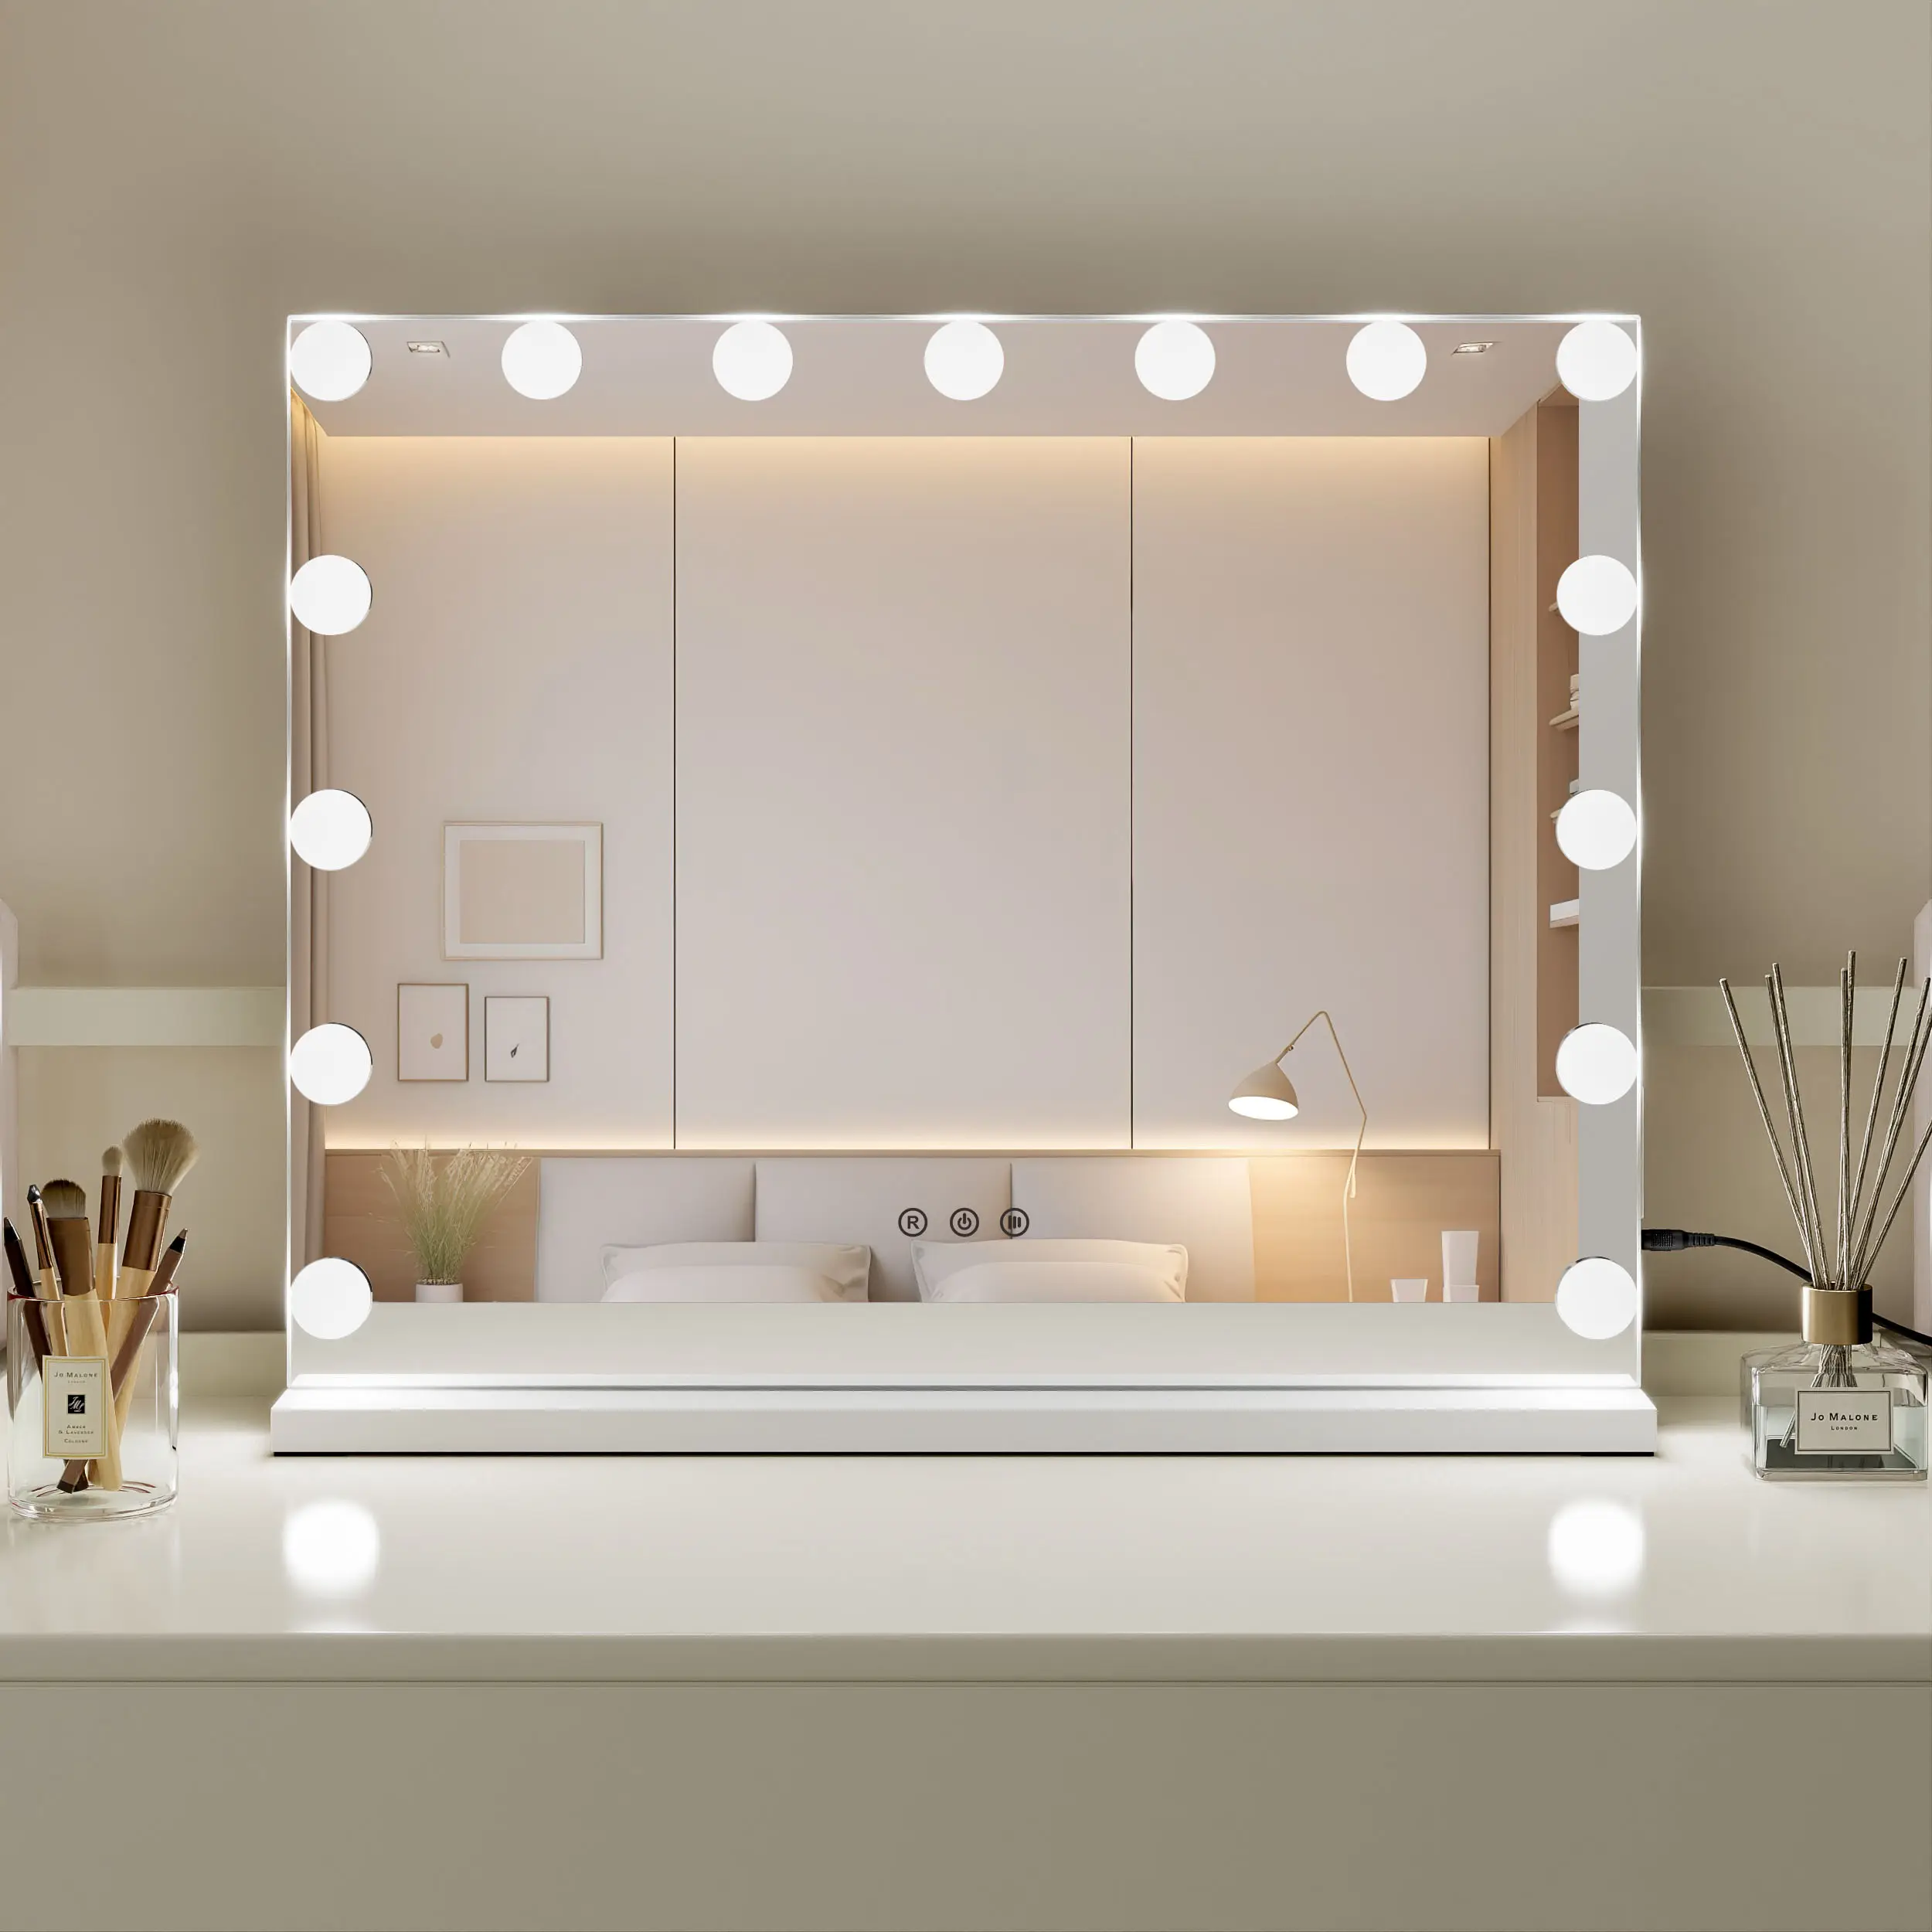 Leuchten Sie beleuchtete kosmetische Sensorsc halter Touchscreen LED Make-up Kosmetik spiegel Hollywood Kosmetik spiegel